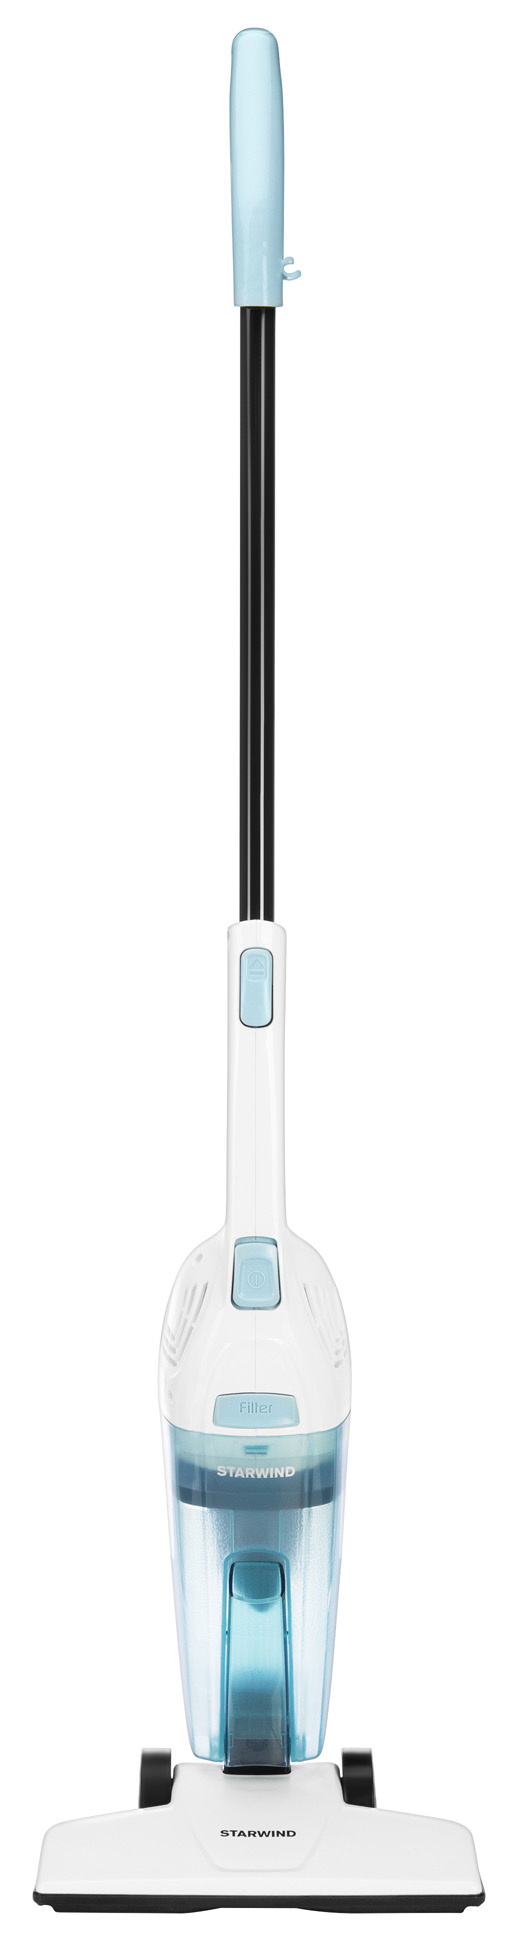 Пылесос Starwind SCH1650 белый (ручной, с контейнером, 800Вт)